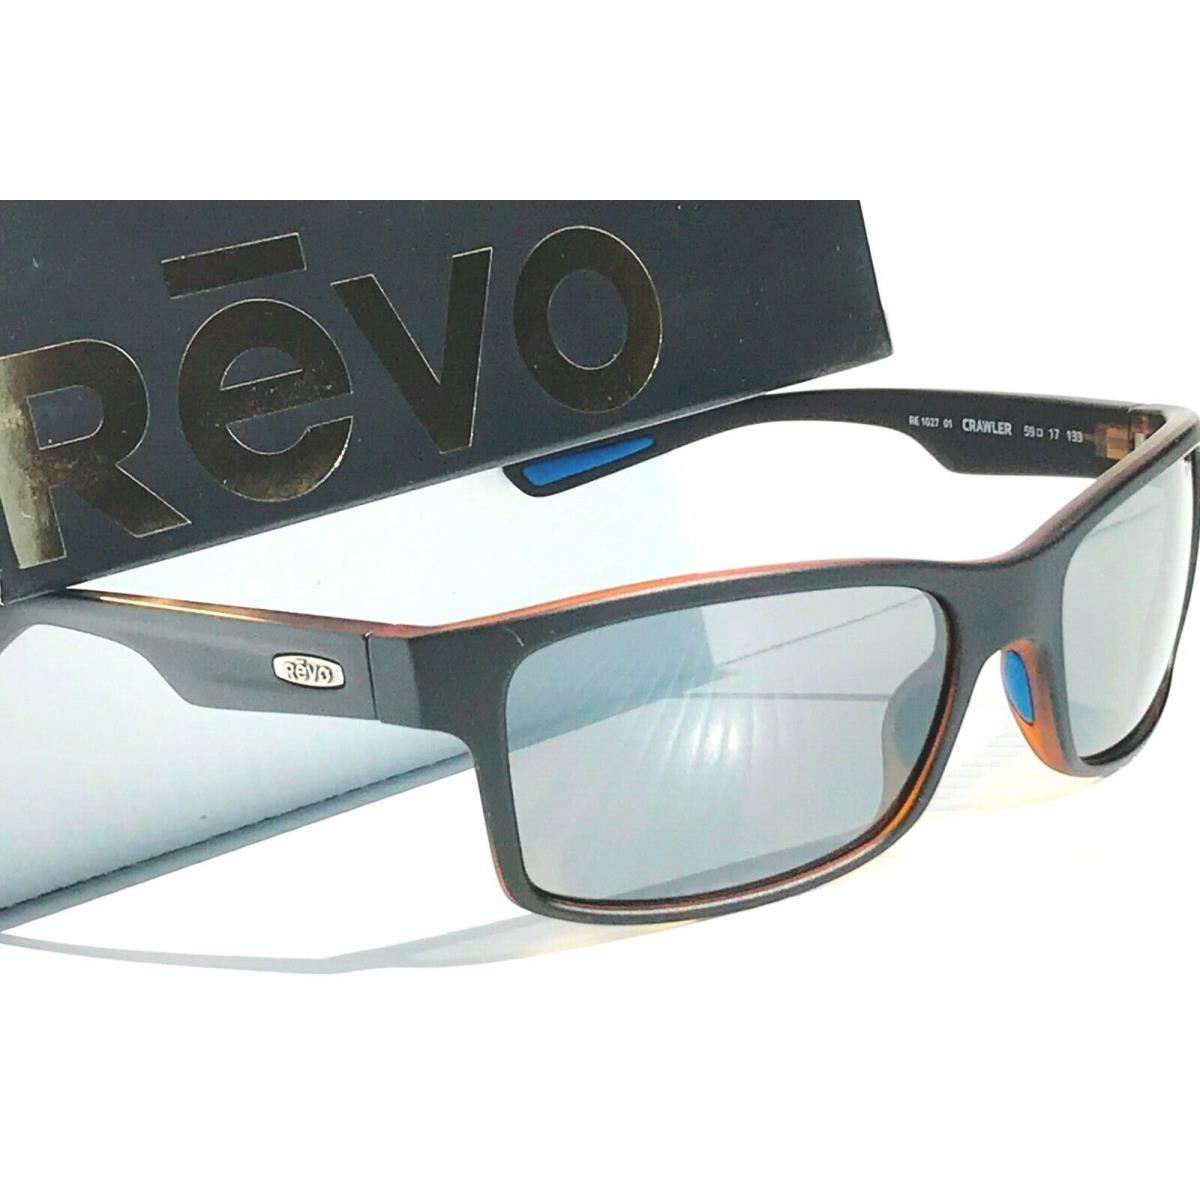 Revo sunglasses Crawler - Black Tortoise Frame, Gray Lens